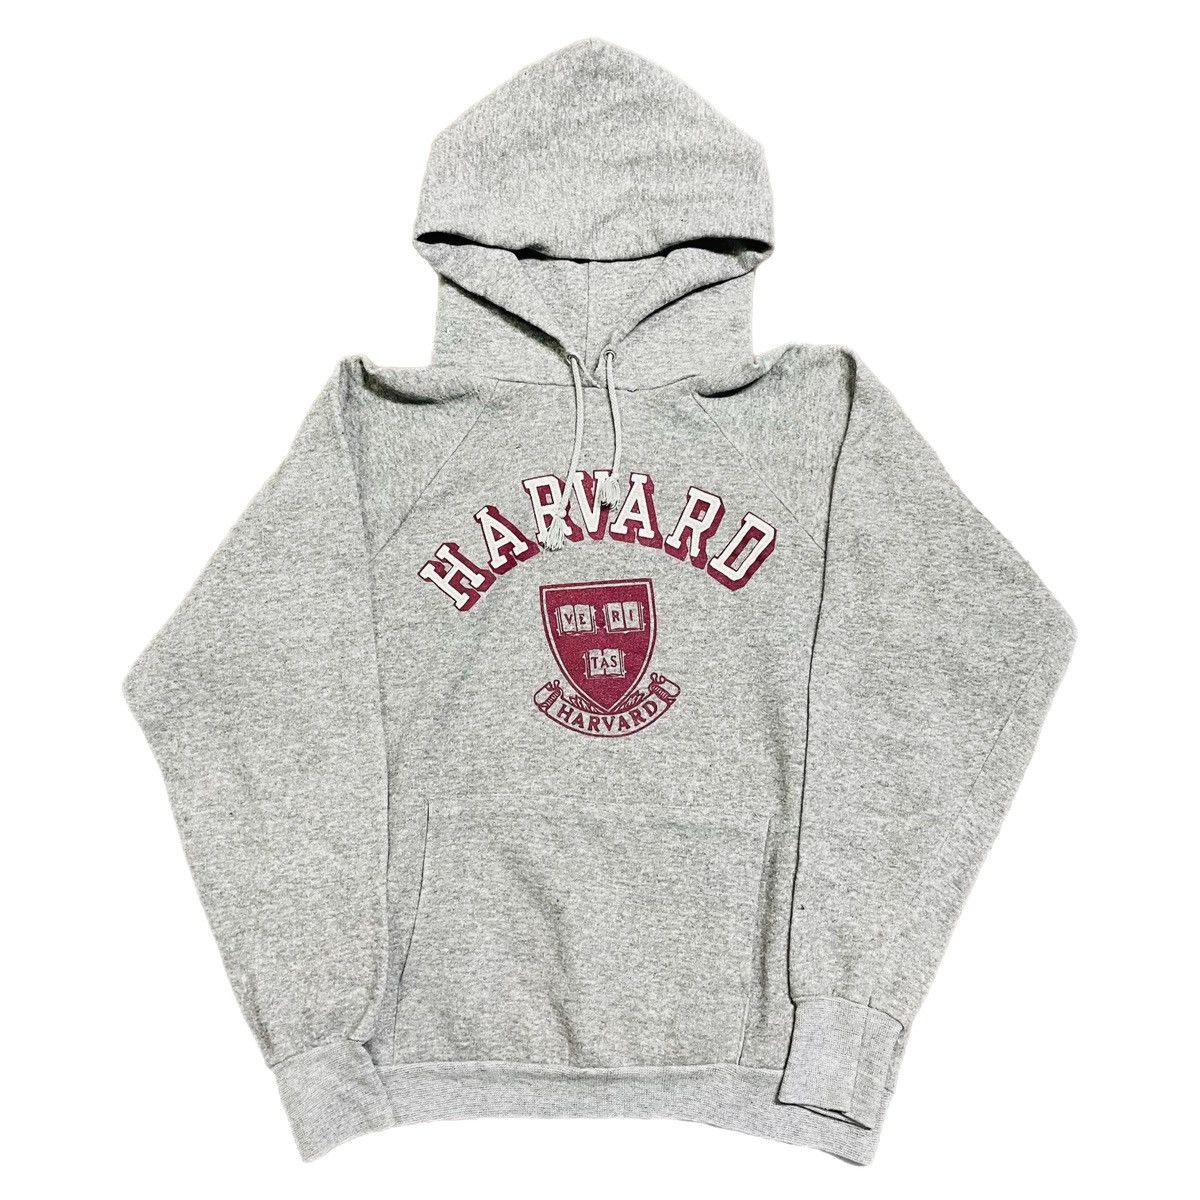 Vintage Vintage 80s Harvard University Raglan Hoodie Sweatshirt Size US M / EU 48-50 / 2 - 1 Preview